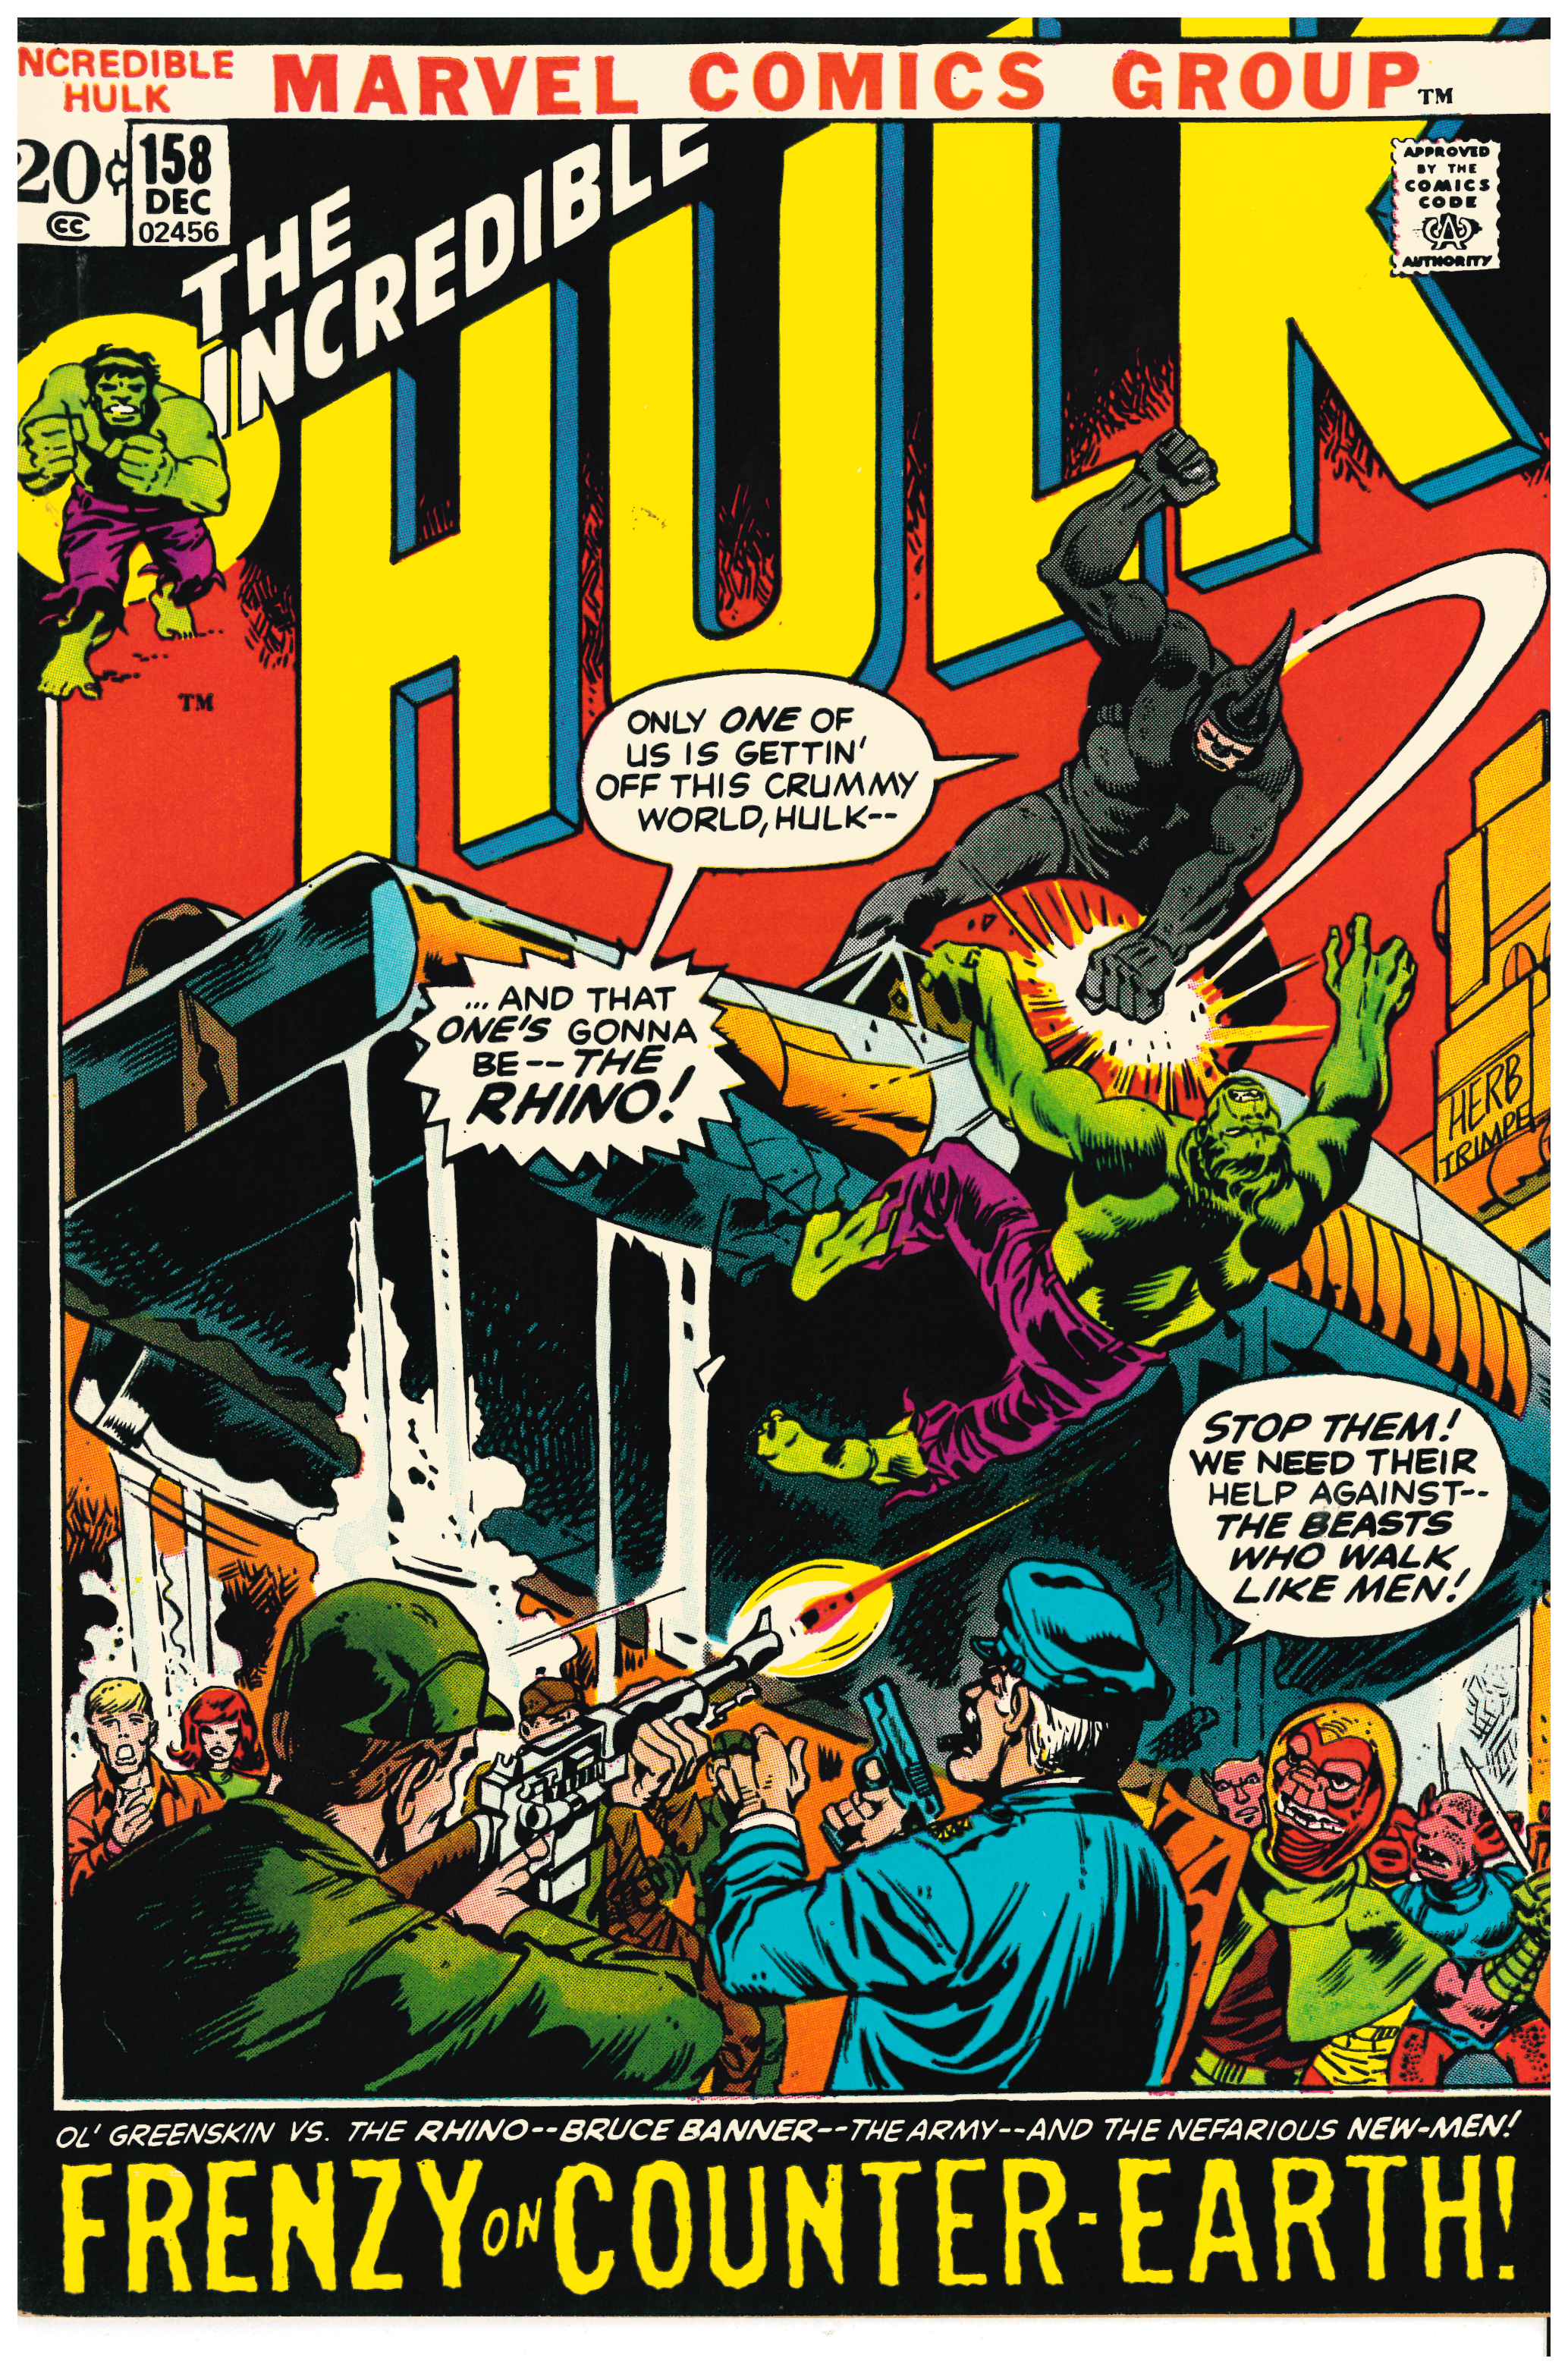 Incredible Hulk #158